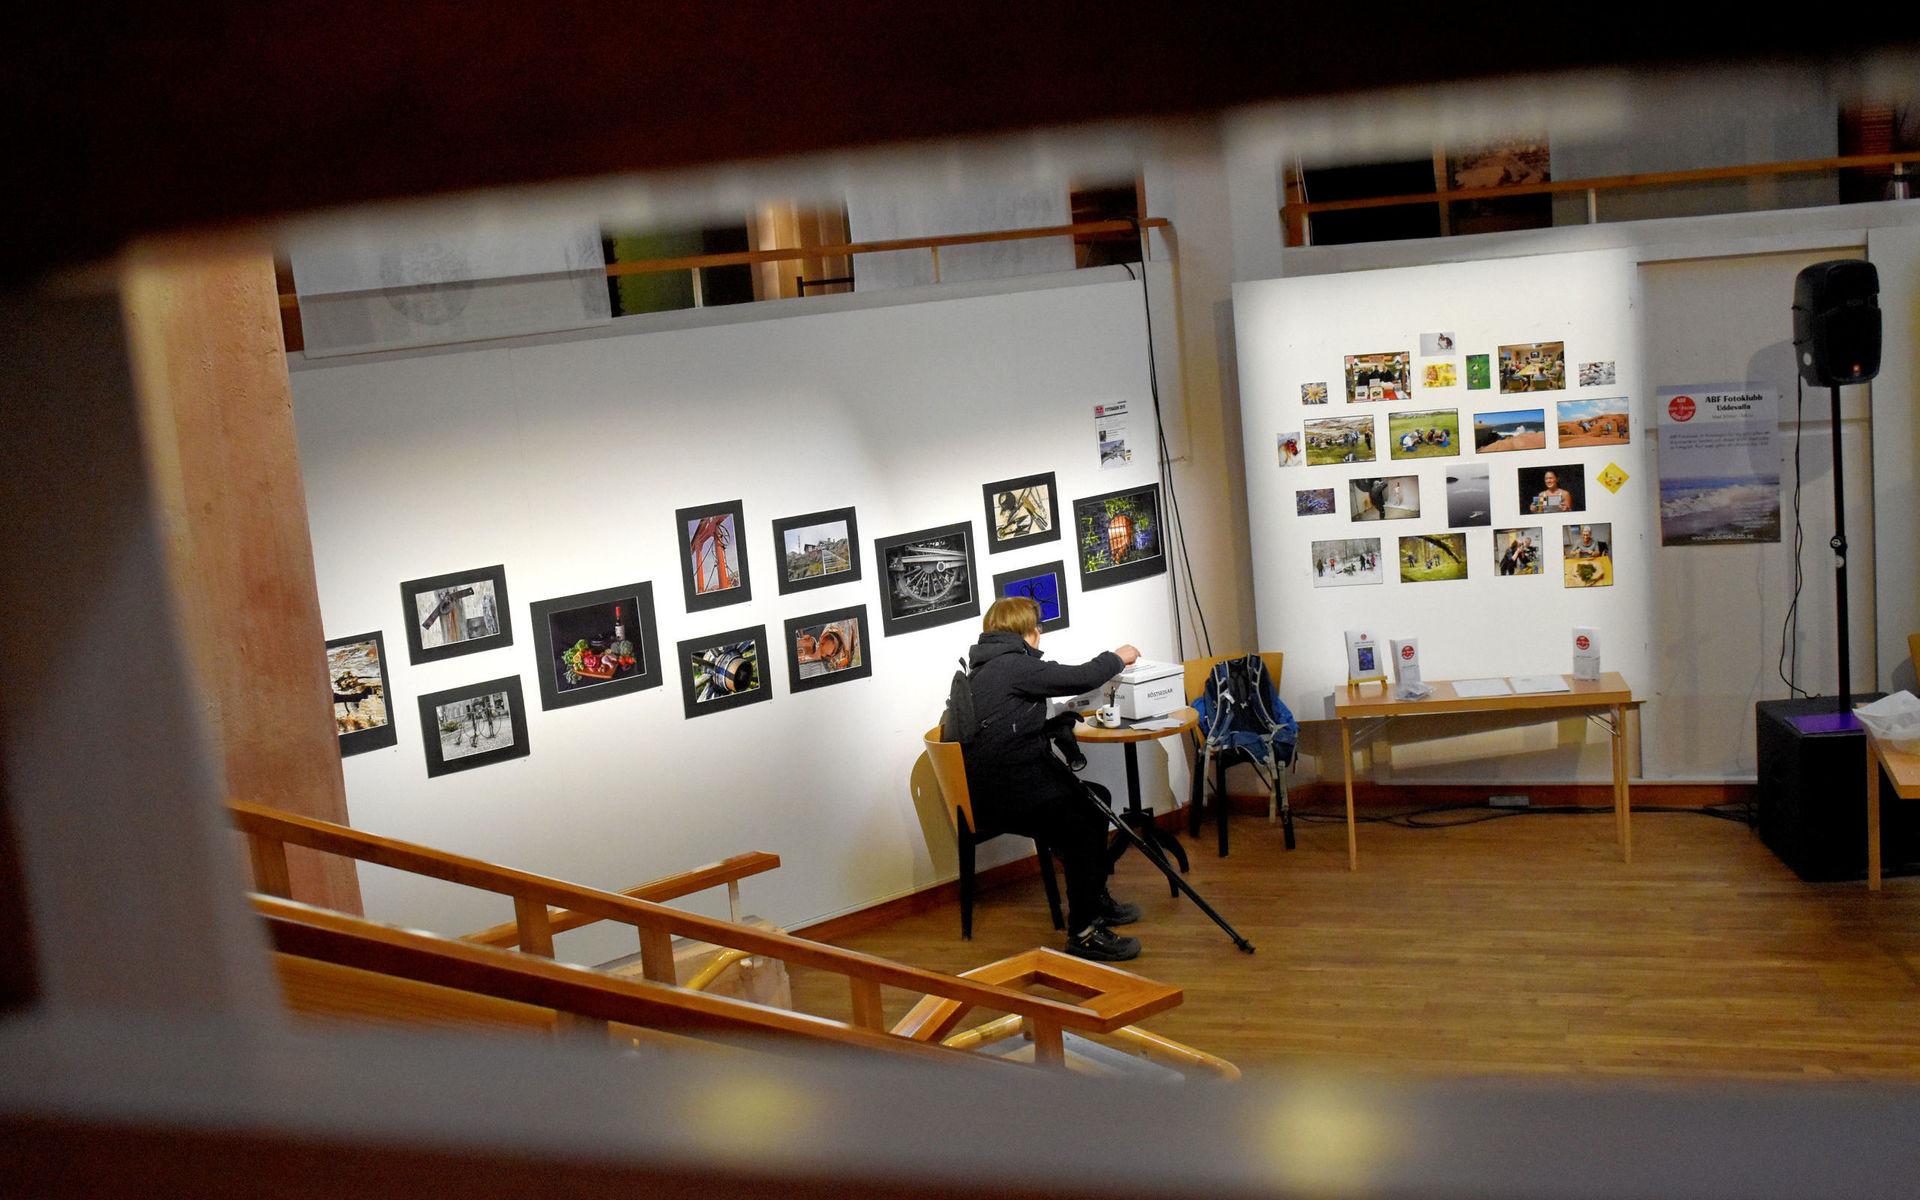 Tolv oramade fotografier hänger på väggen som omger scenen på Bohusläns museum. 